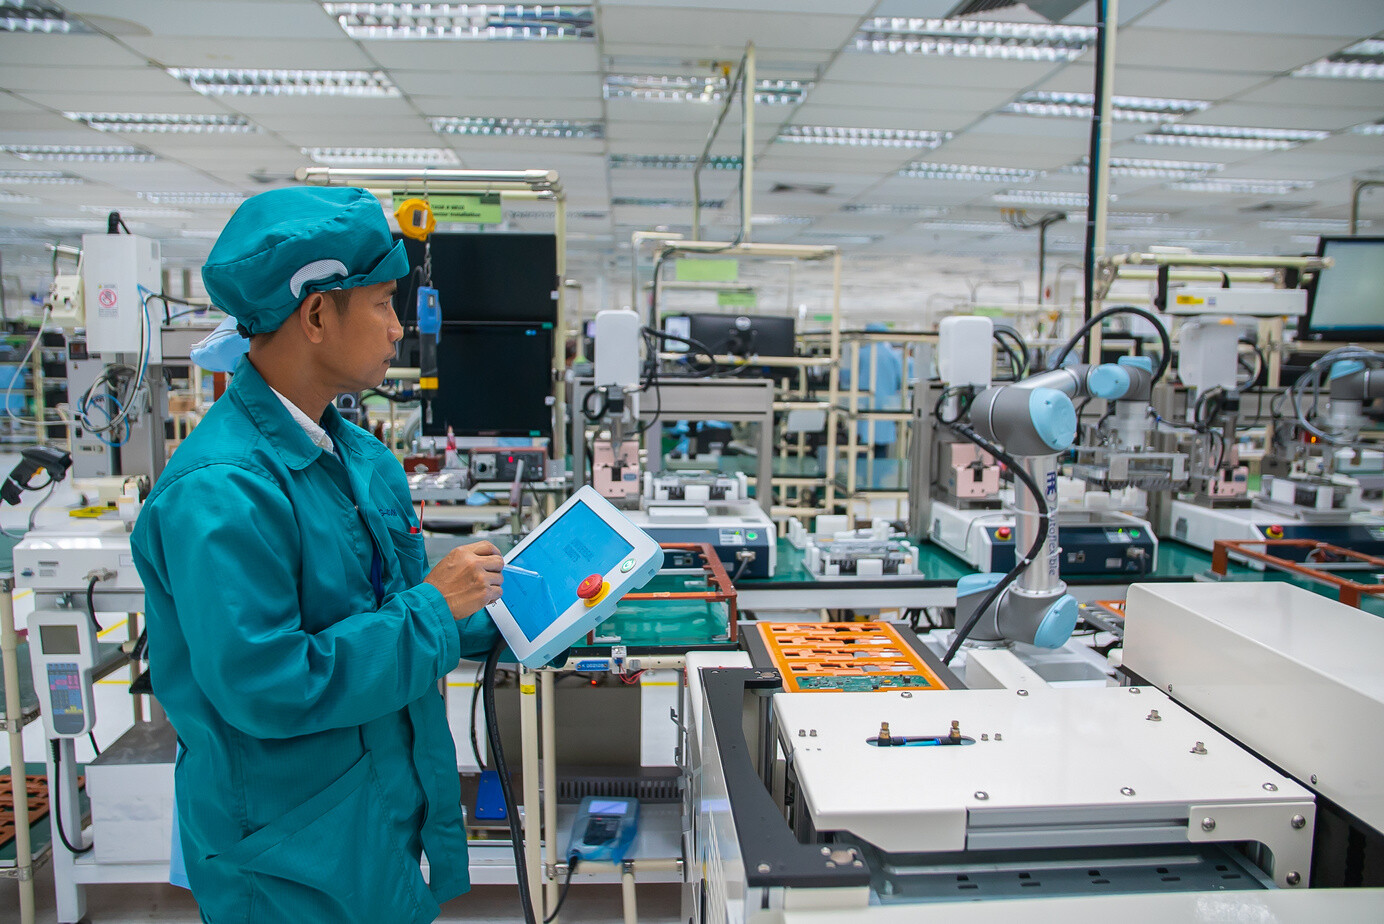 ยูนิเวอร์ซัล โรบอทระบุระบบอัตโนมัติแบบมีส่วนร่วมช่วยป้องกันการสูญงาน ของภาคการผลิตของไทยที่ชะลอตัว